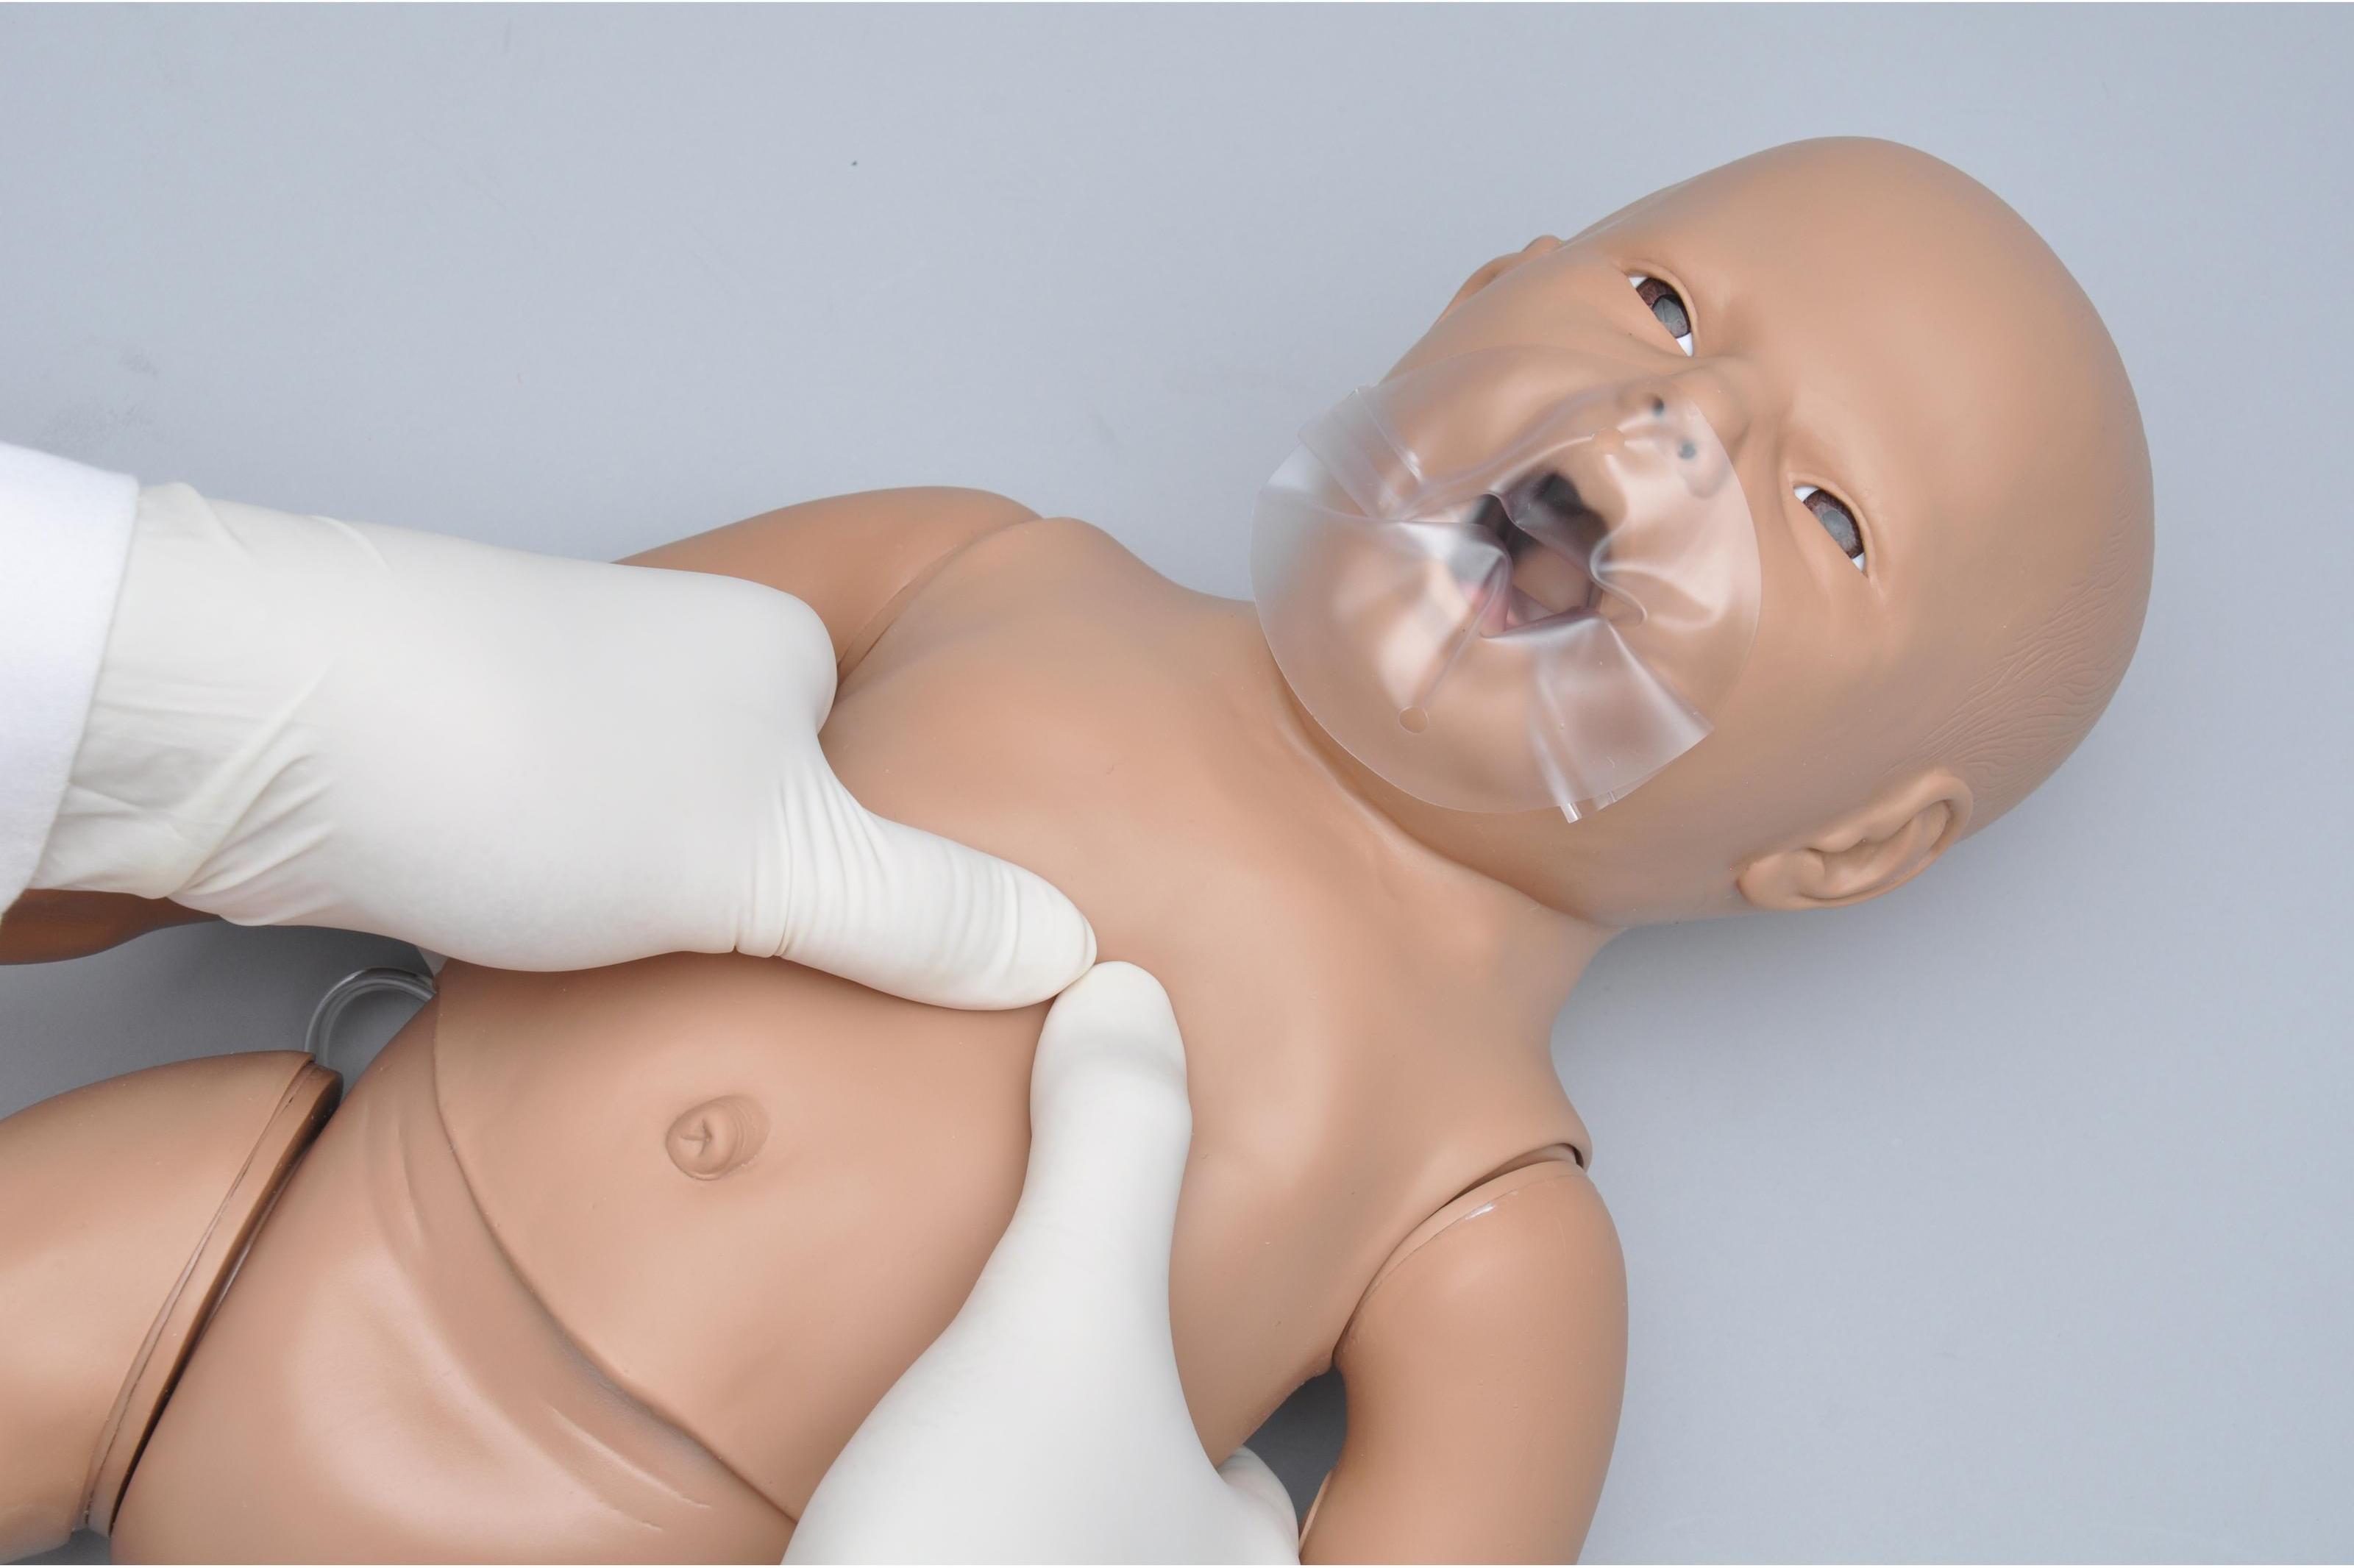 Имитатор для обучения СЛР и уходу при травмах новорожденных с Code Blue Monitor plus с местами для внутрикостных инфузий и внутривенных инъекций